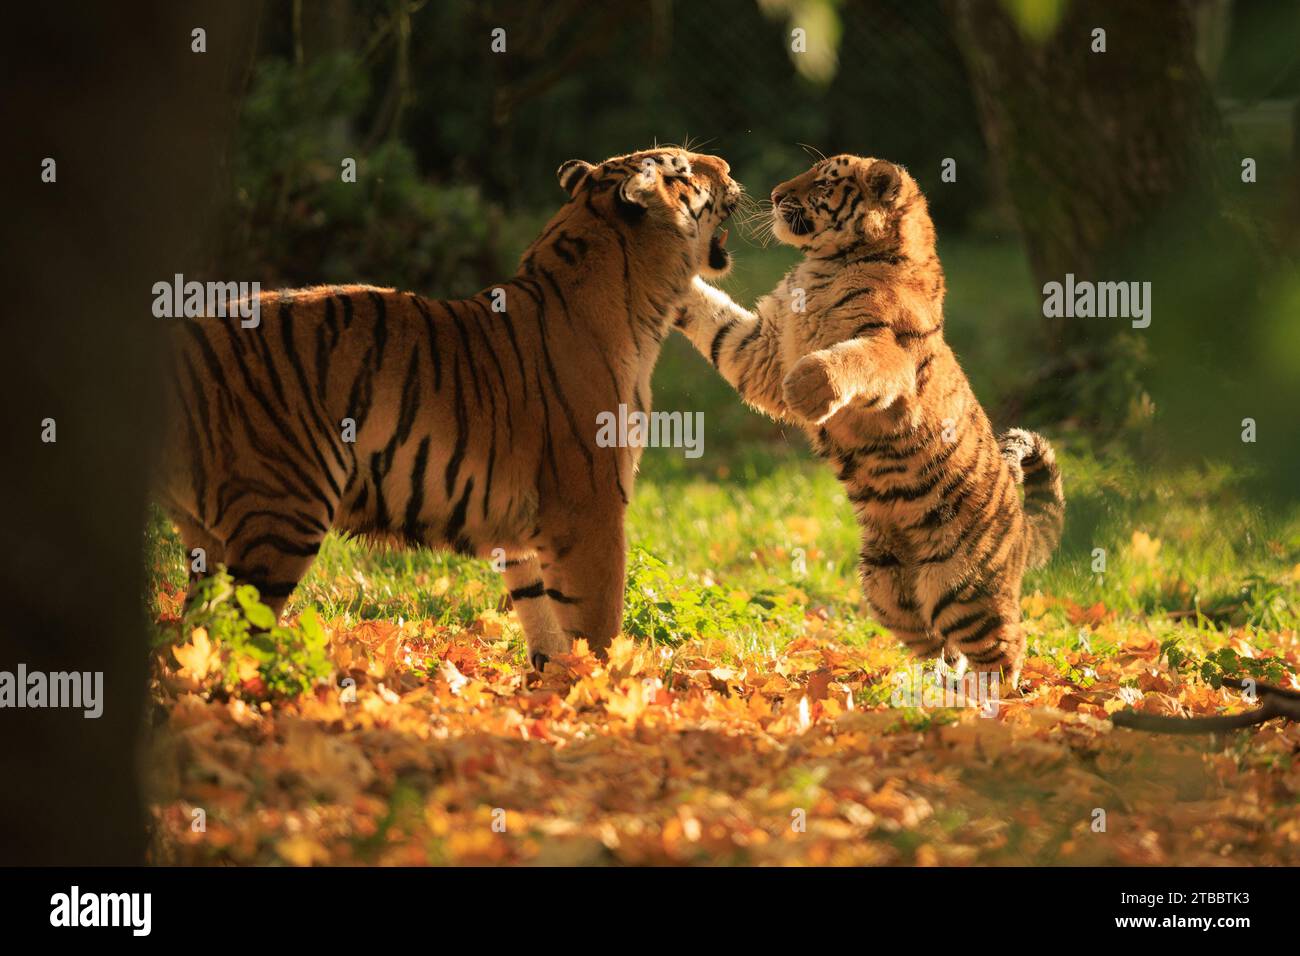 Ein Bündel von grenzenloser Energie, die BEZAUBERNDE Bilder aus Großbritannien zeigen, wie eine Tigermutter ihrem Sohn beibringt, sich zu verteidigen. Das sechsmonatige Junge kann man sehen, wie es eins gegen eins geht Stockfoto